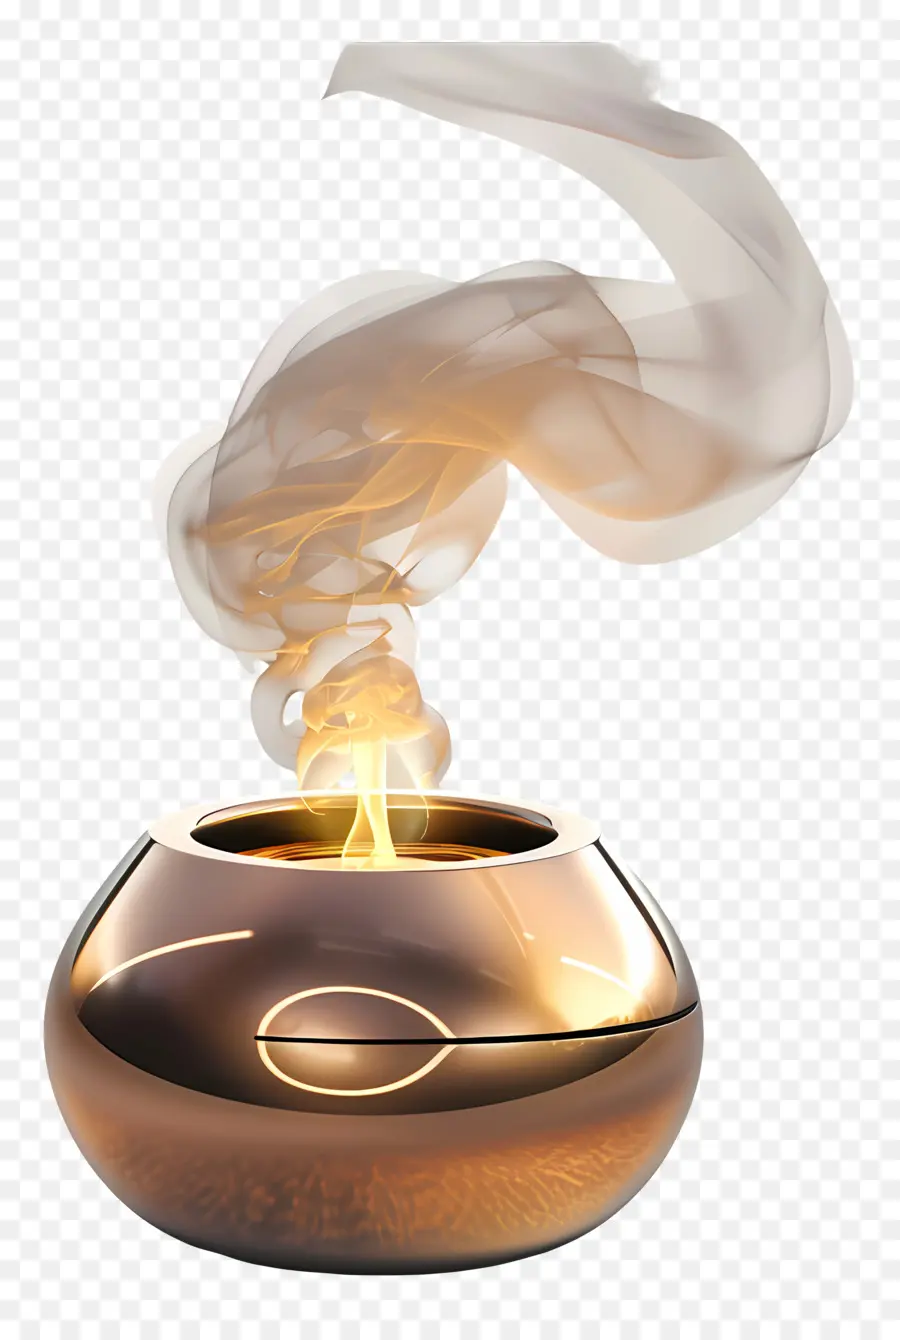 Aroma Brenner Kupferkochkochutensilien Rauch Küchenwaren - Kupfertopf mit Rauch auf dunklem Hintergrund